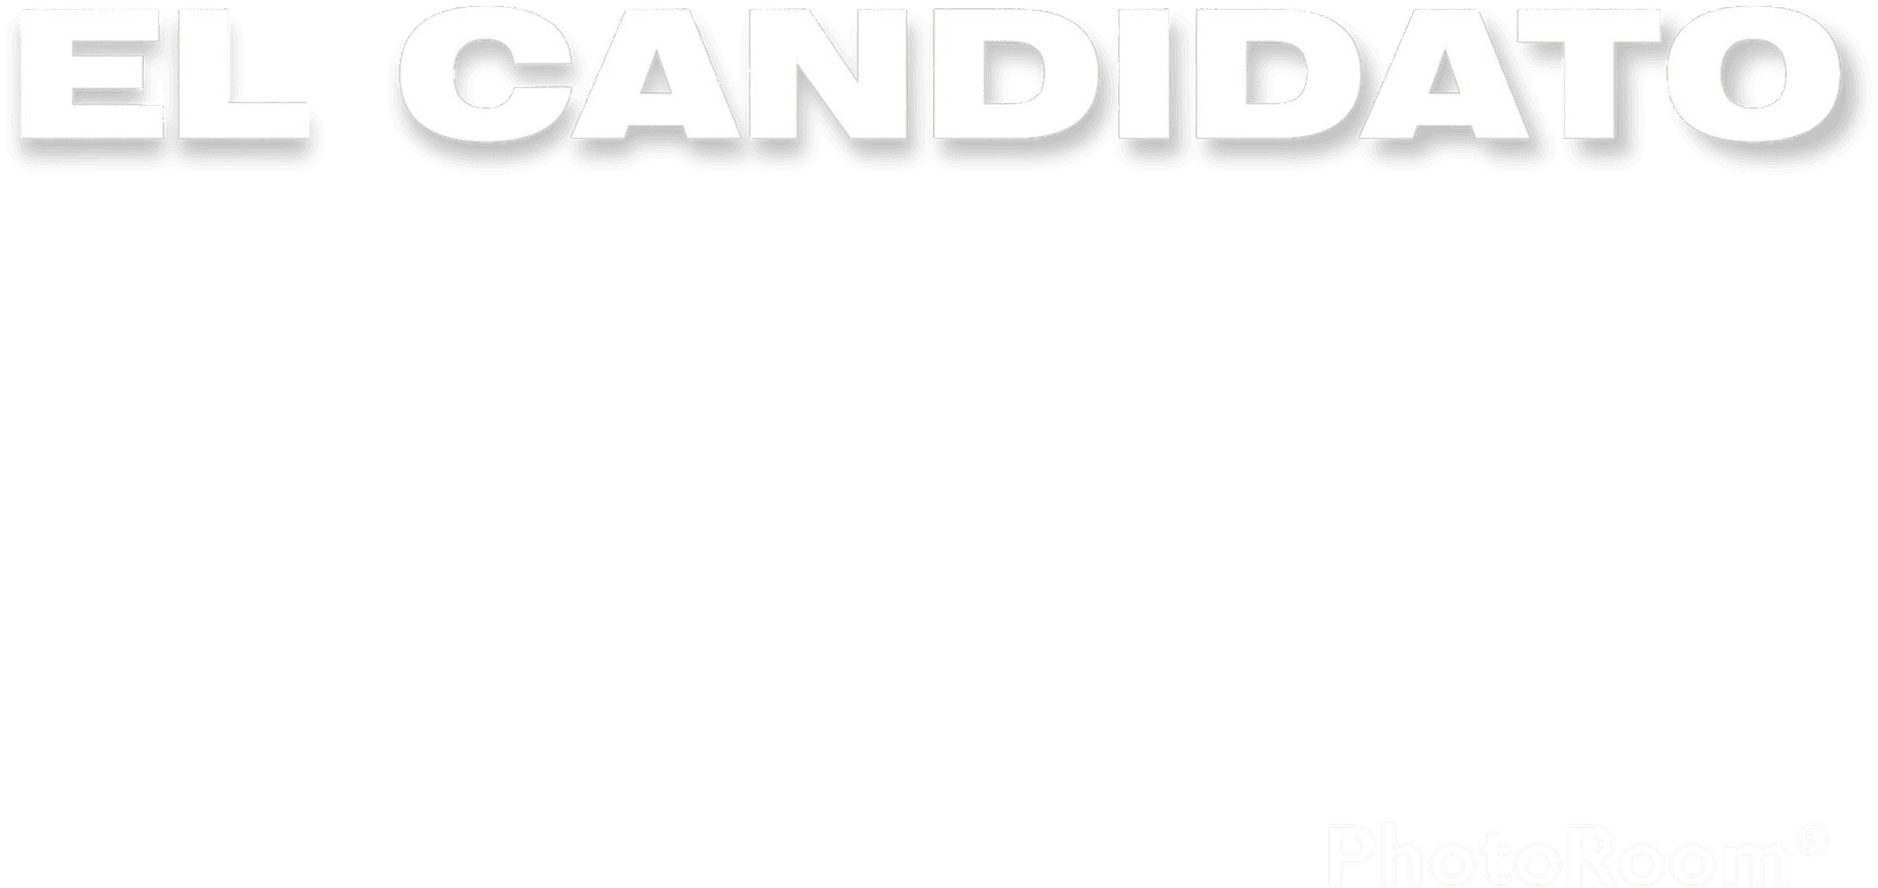 El Candidato logo